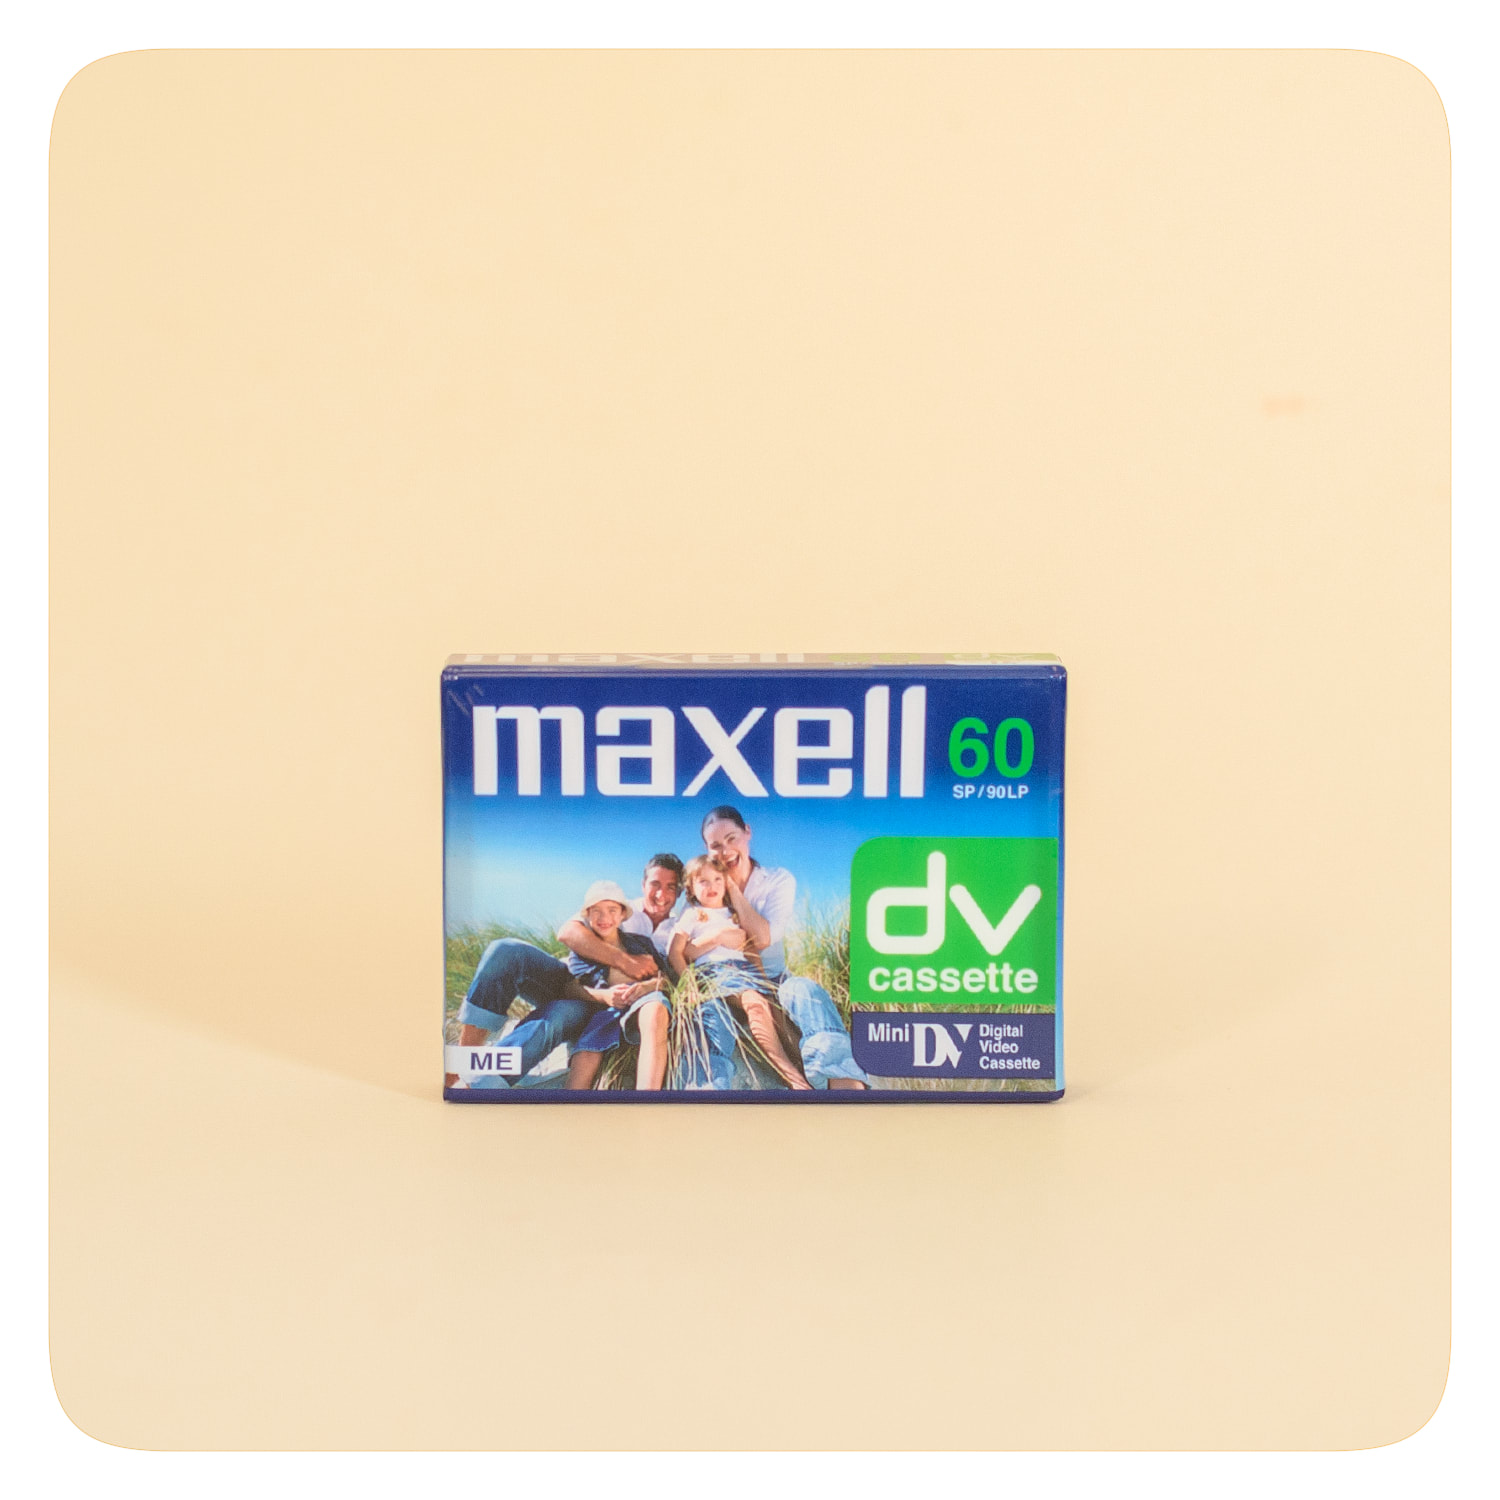 maxell mini dv Cassette